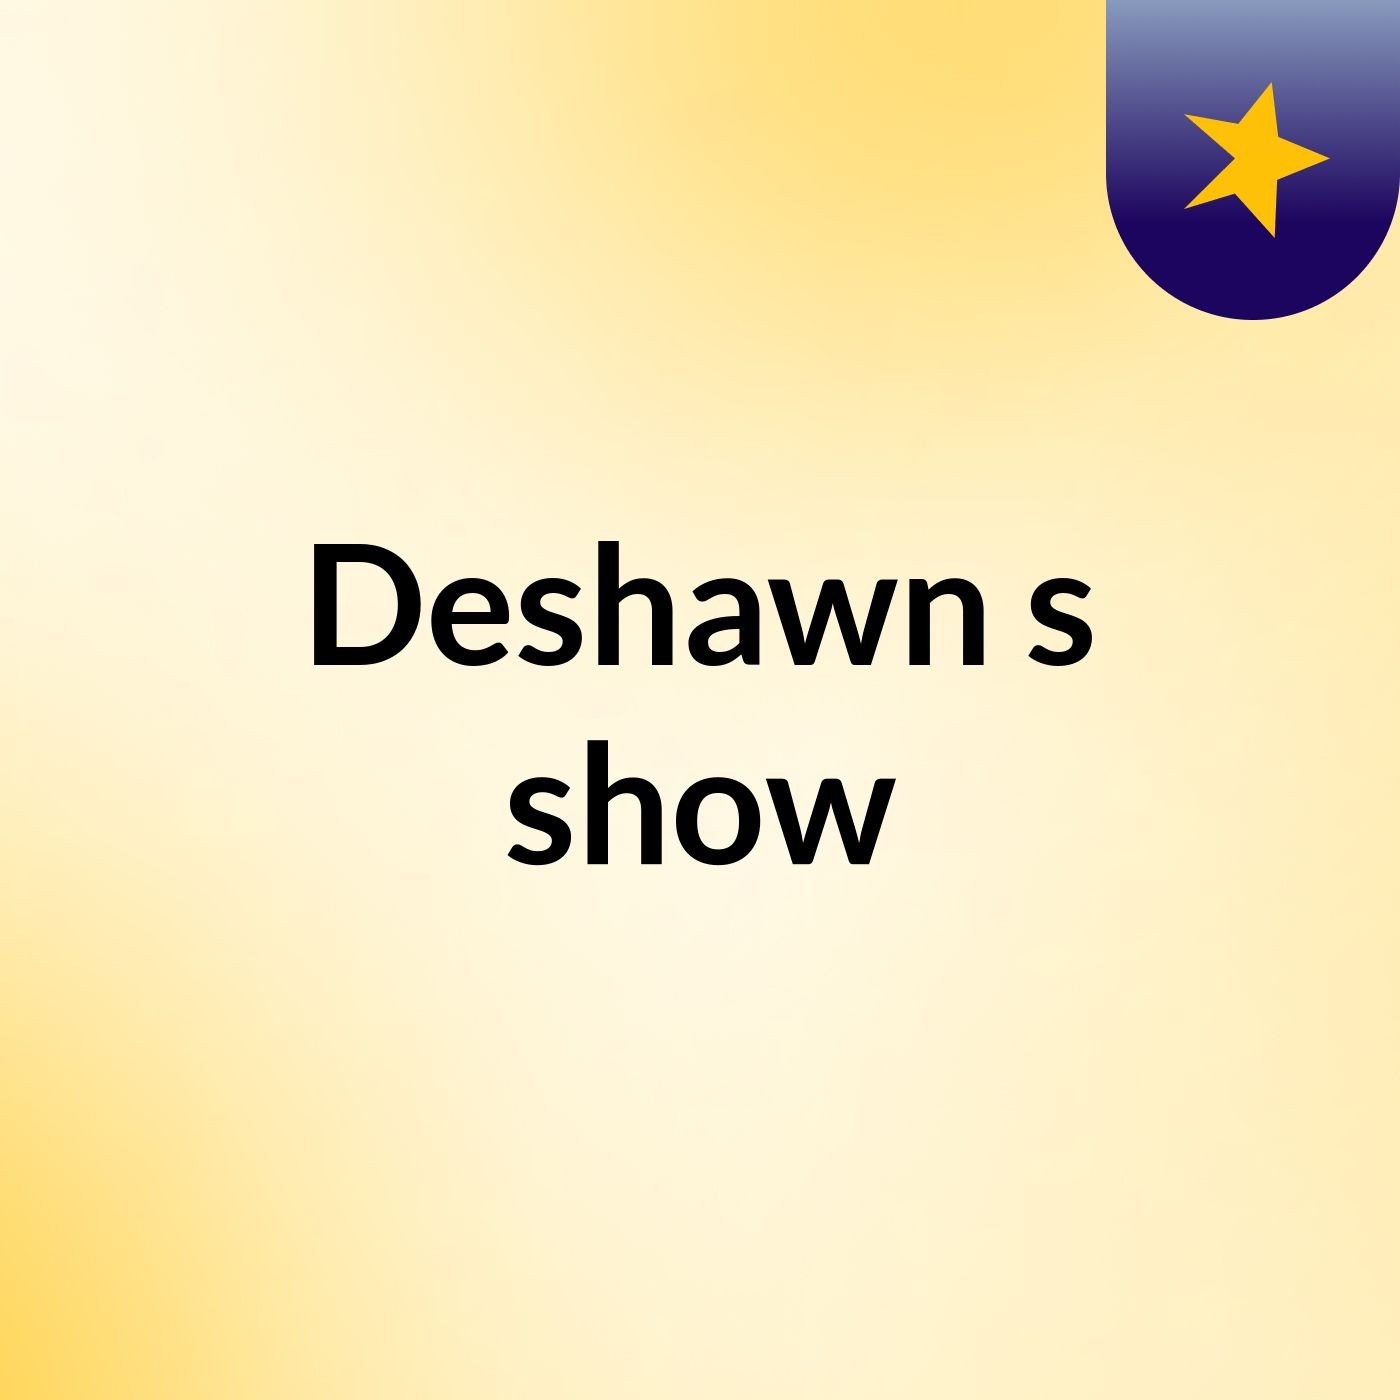 Episode 5 - Deshawn's show